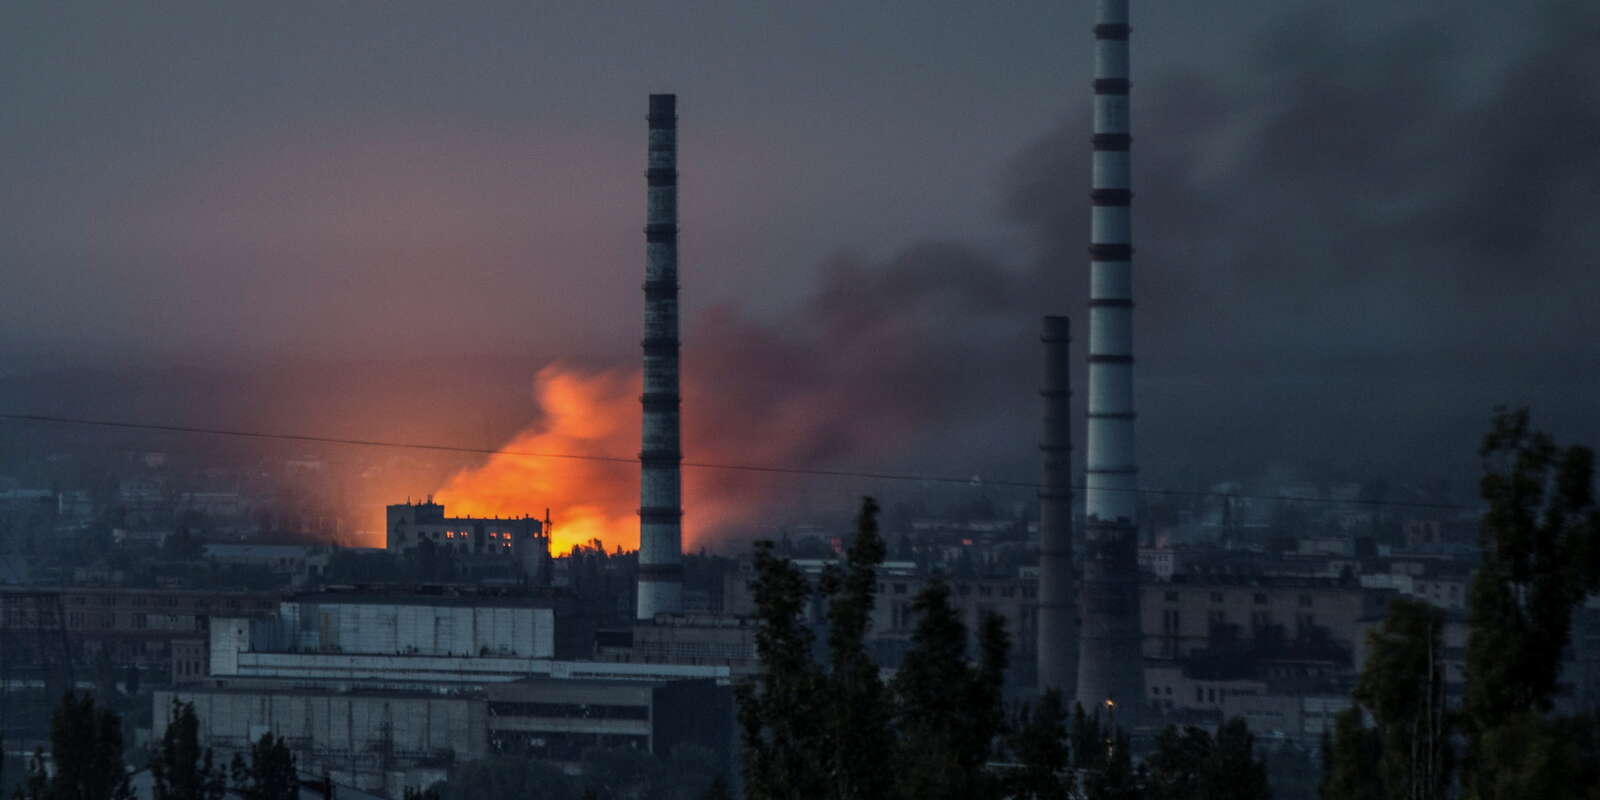 Des flammes et de la fumée s’élèvent dans le ciel après une frappe militaire sur le complexe de l’usine chimique Azot de Sievierodonetsk, dans la région de Louhansk en Ukraine, le 18 juin 2022. 